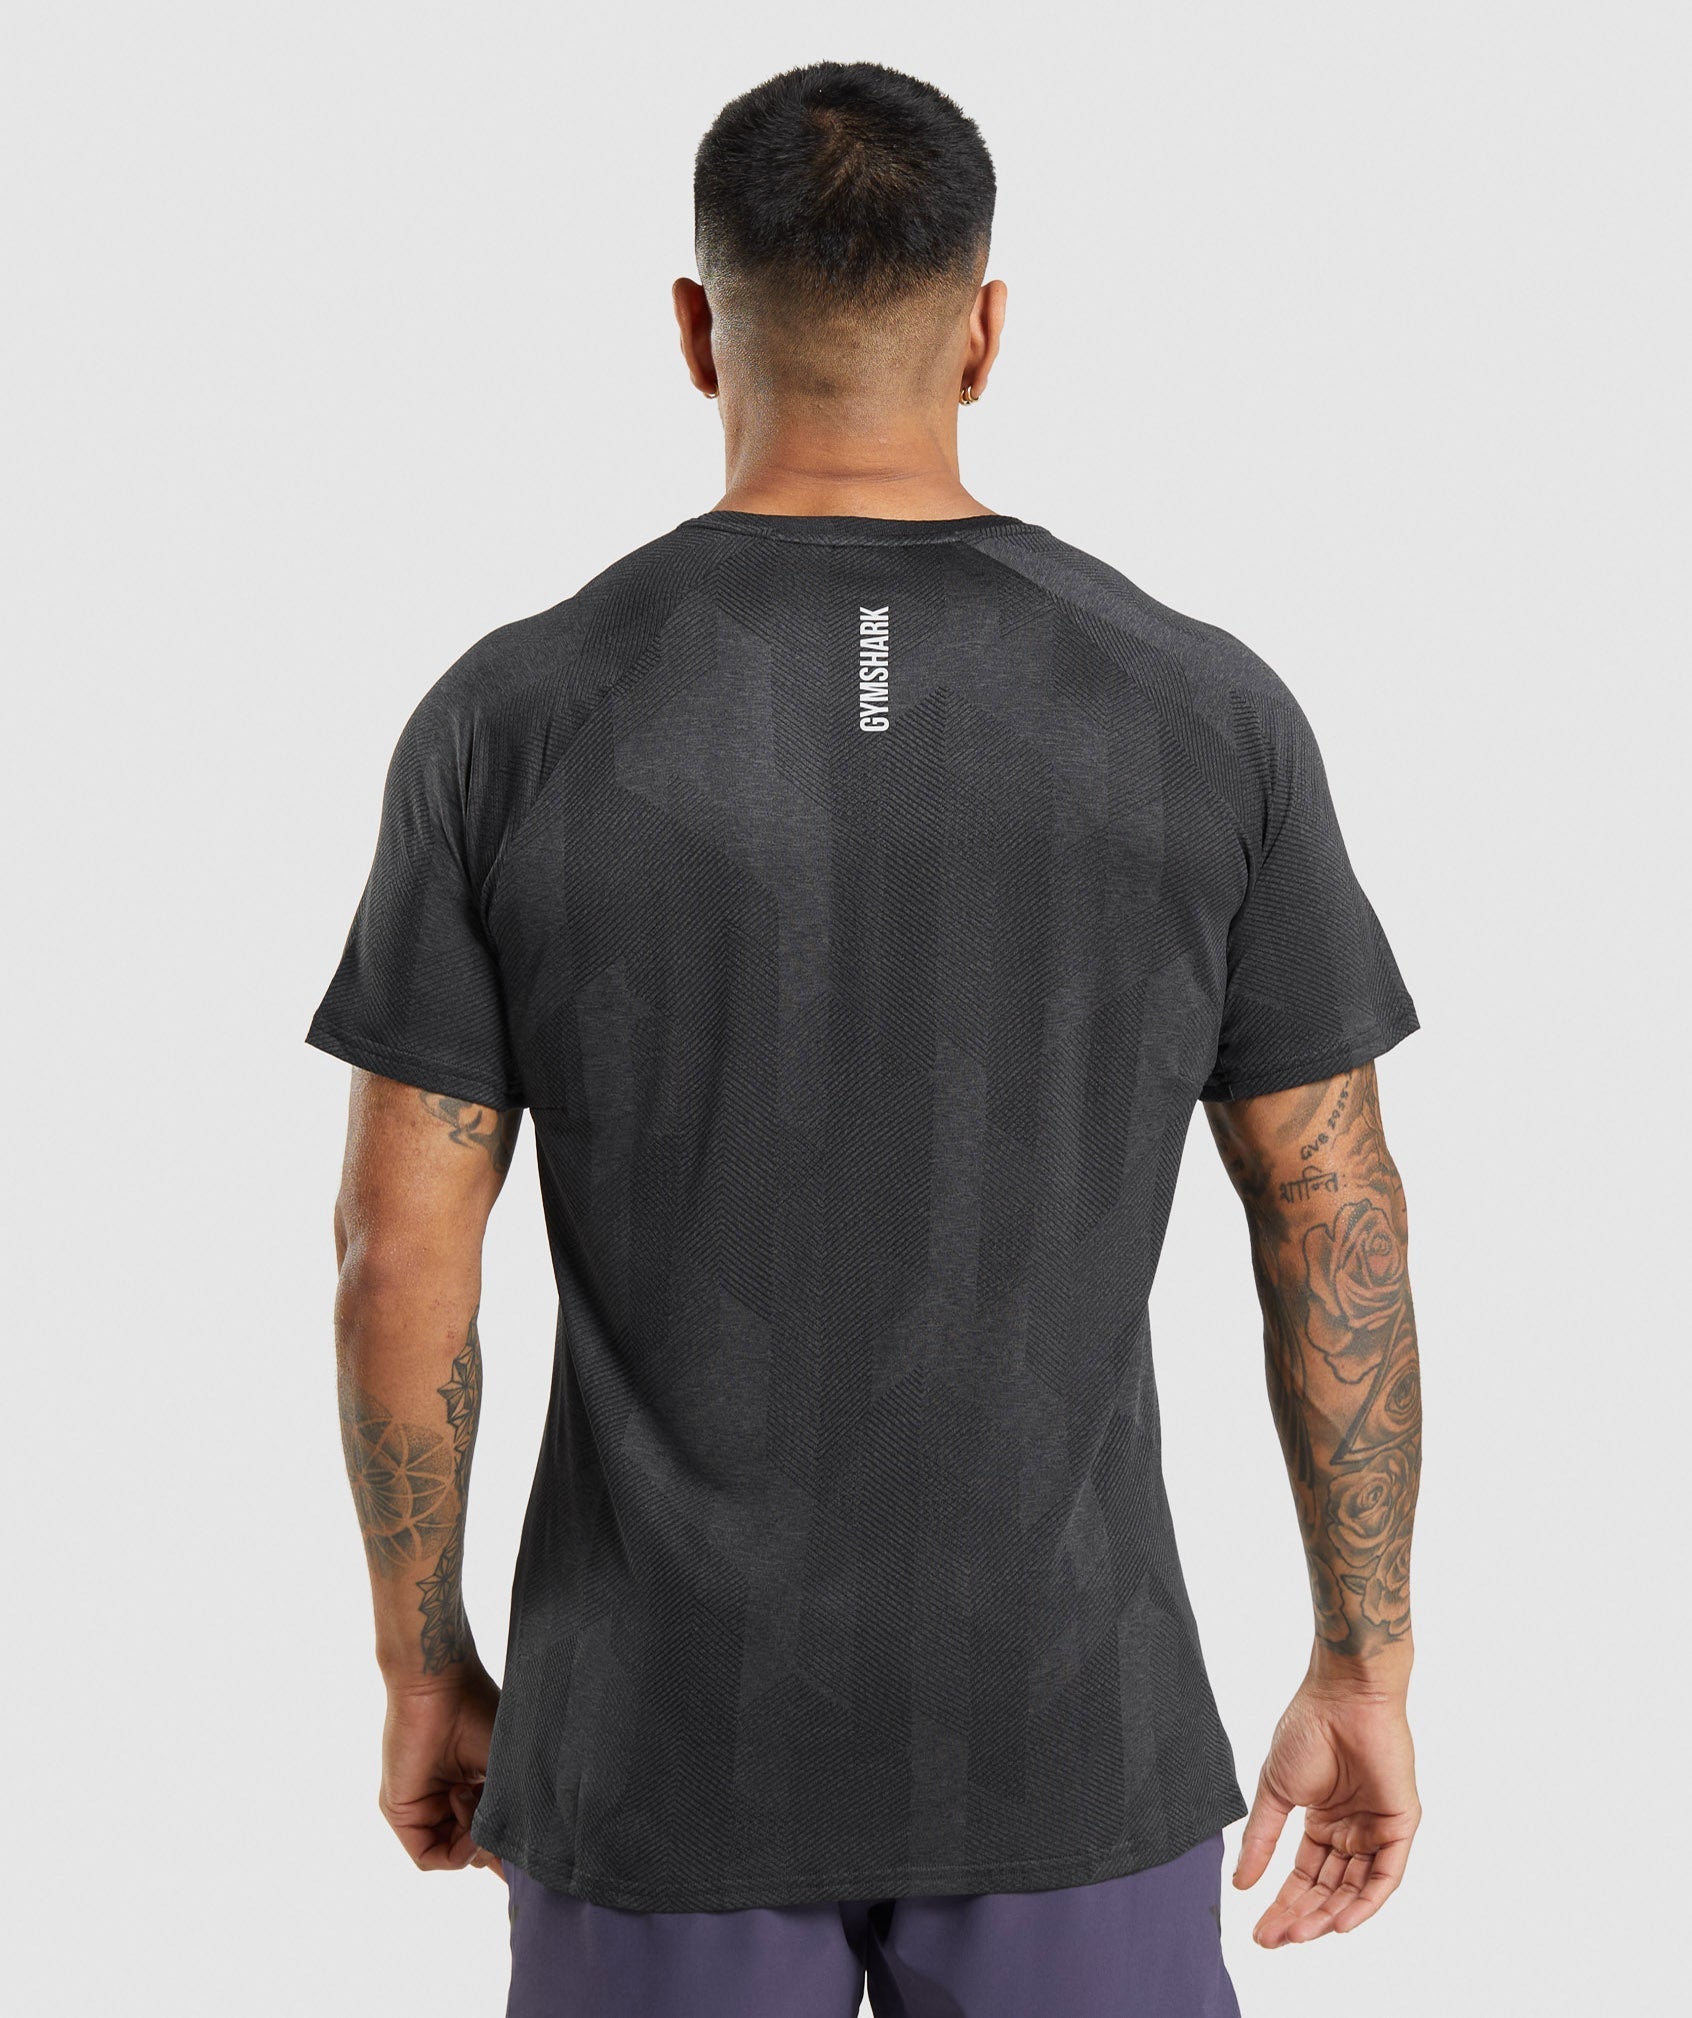 Apex T-Shirt in Black/Onyx Grey